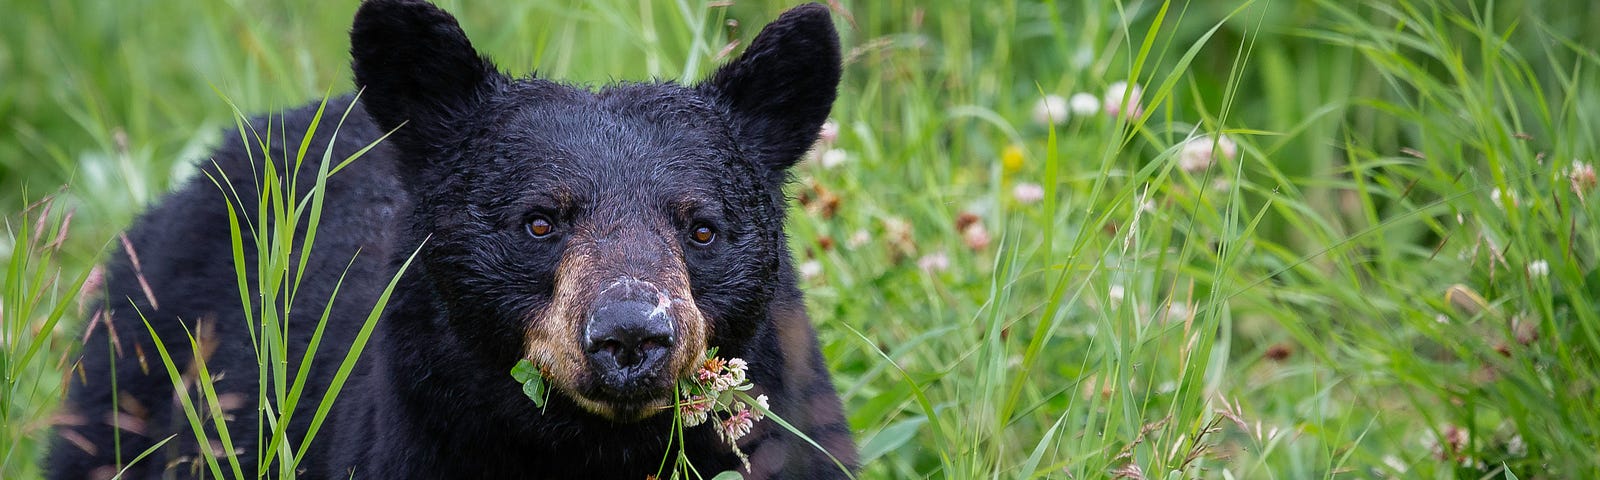 Black bear in meadow.